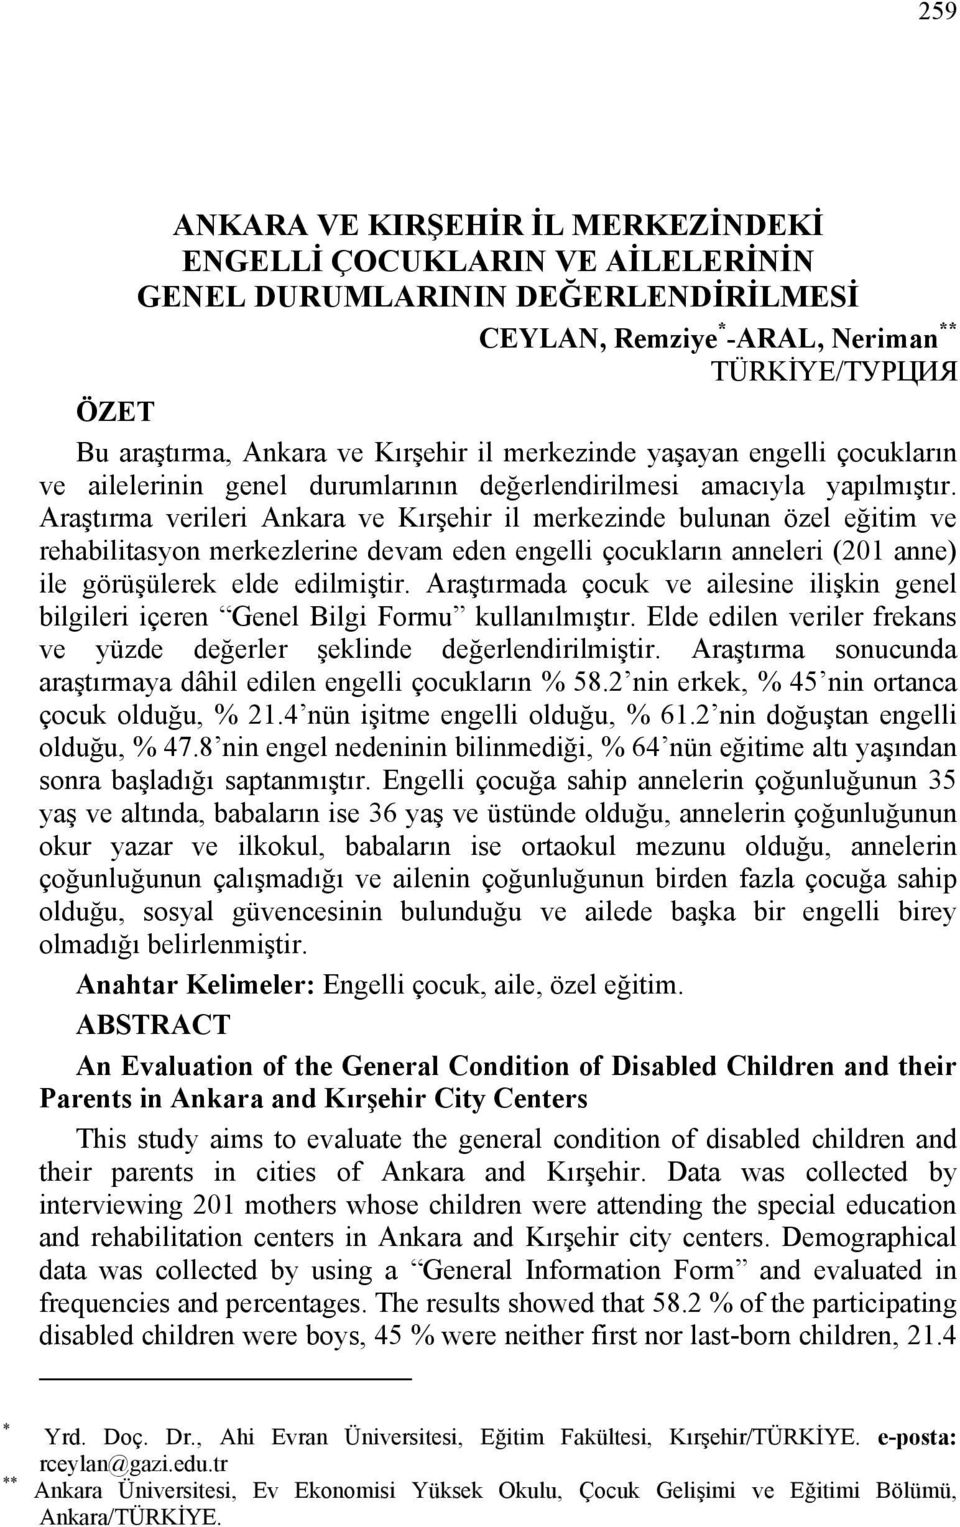 Araştırma verileri Ankara ve Kırşehir il merkezinde bulunan özel eğitim ve rehabilitasyon merkezlerine devam eden engelli çocukların anneleri (201 anne) ile görüşülerek elde edilmiştir.